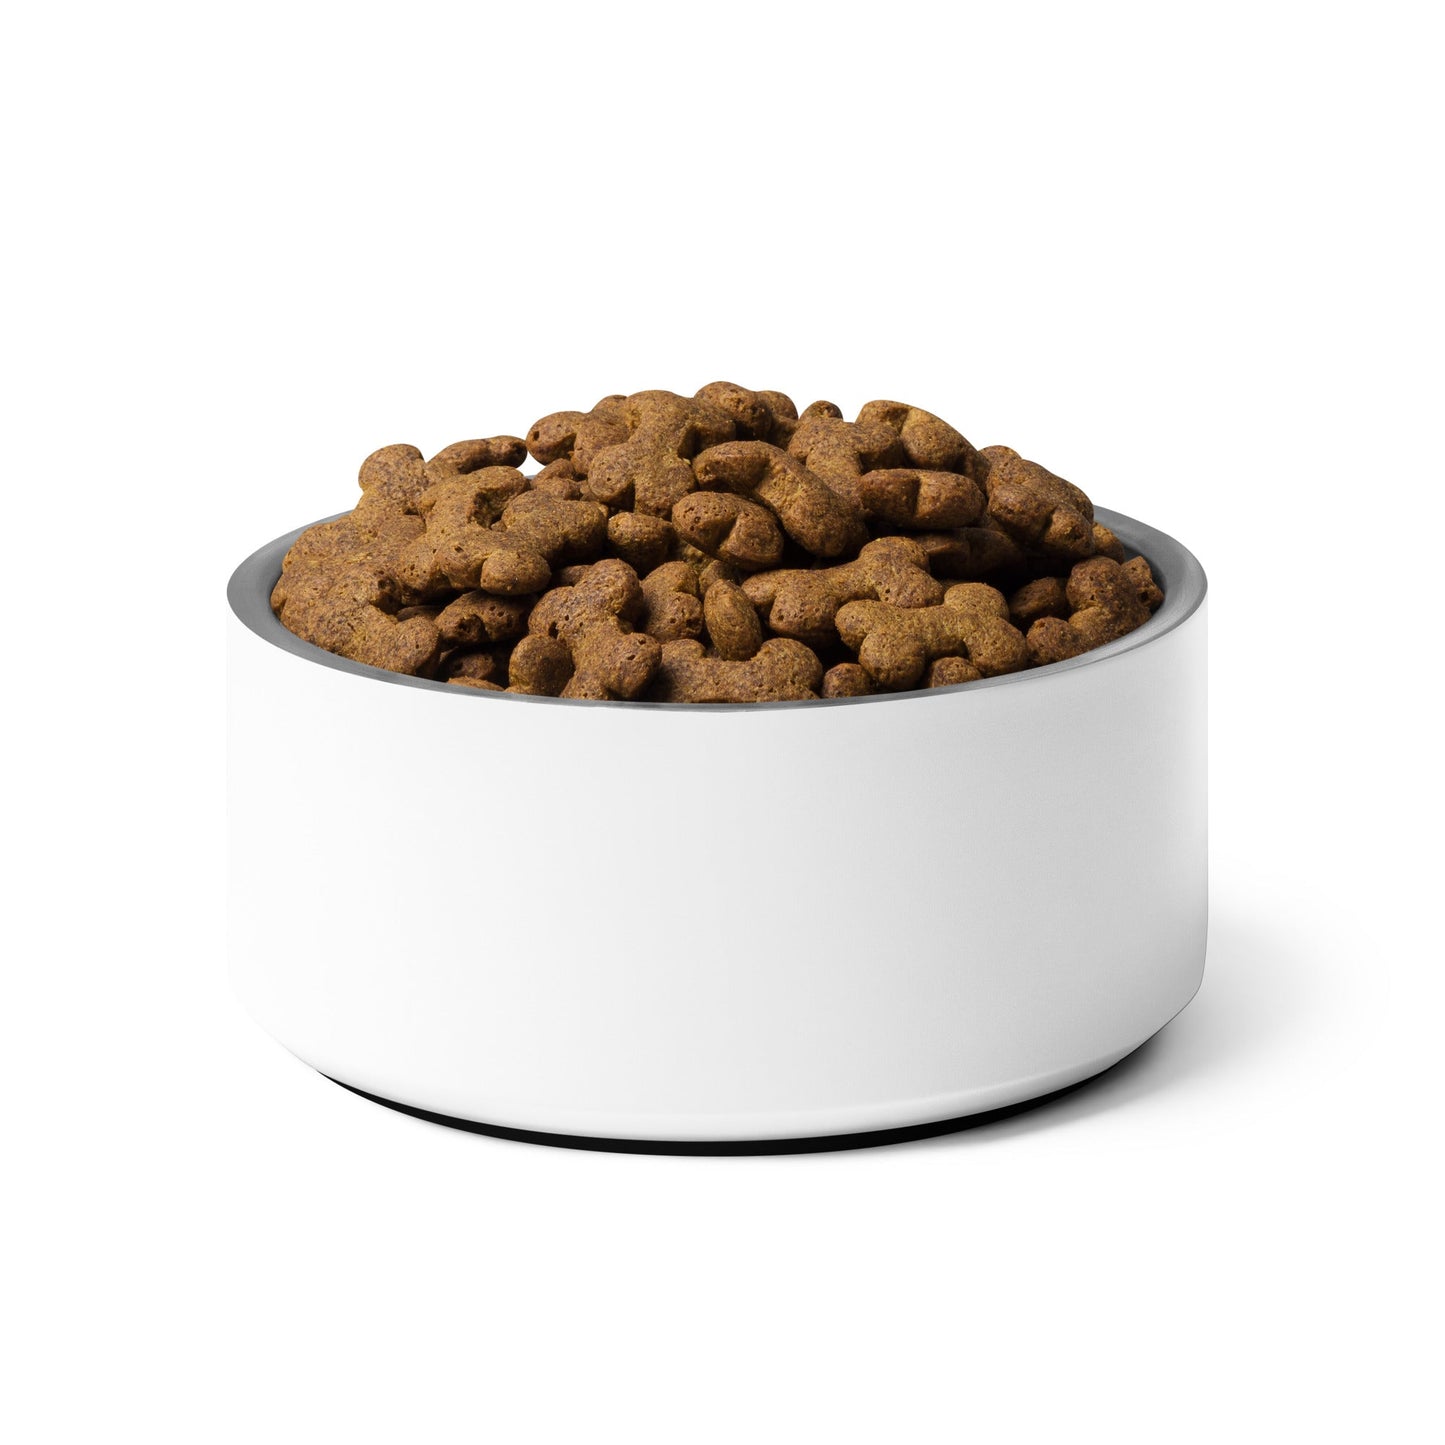 Pet bowl - Customize with Your Pet's Name